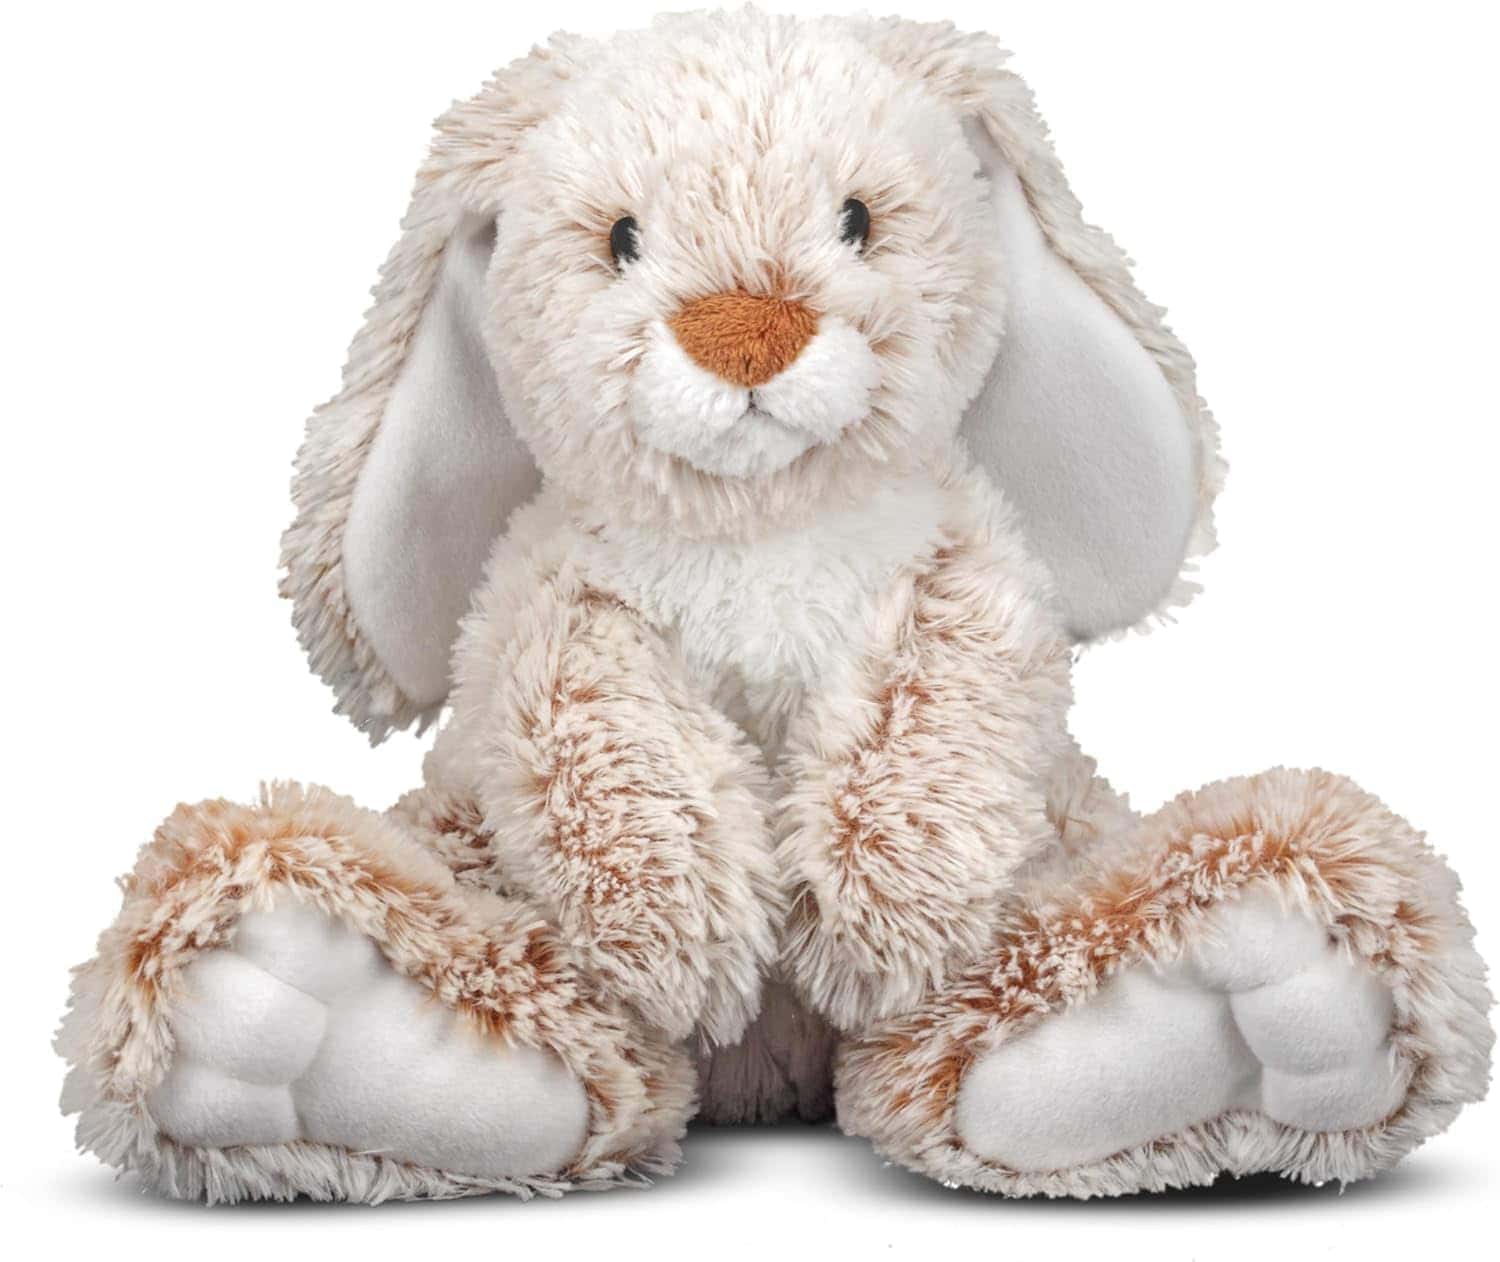 Melissa & Doug Burrow Bunny Rabbit Stuffed Animal